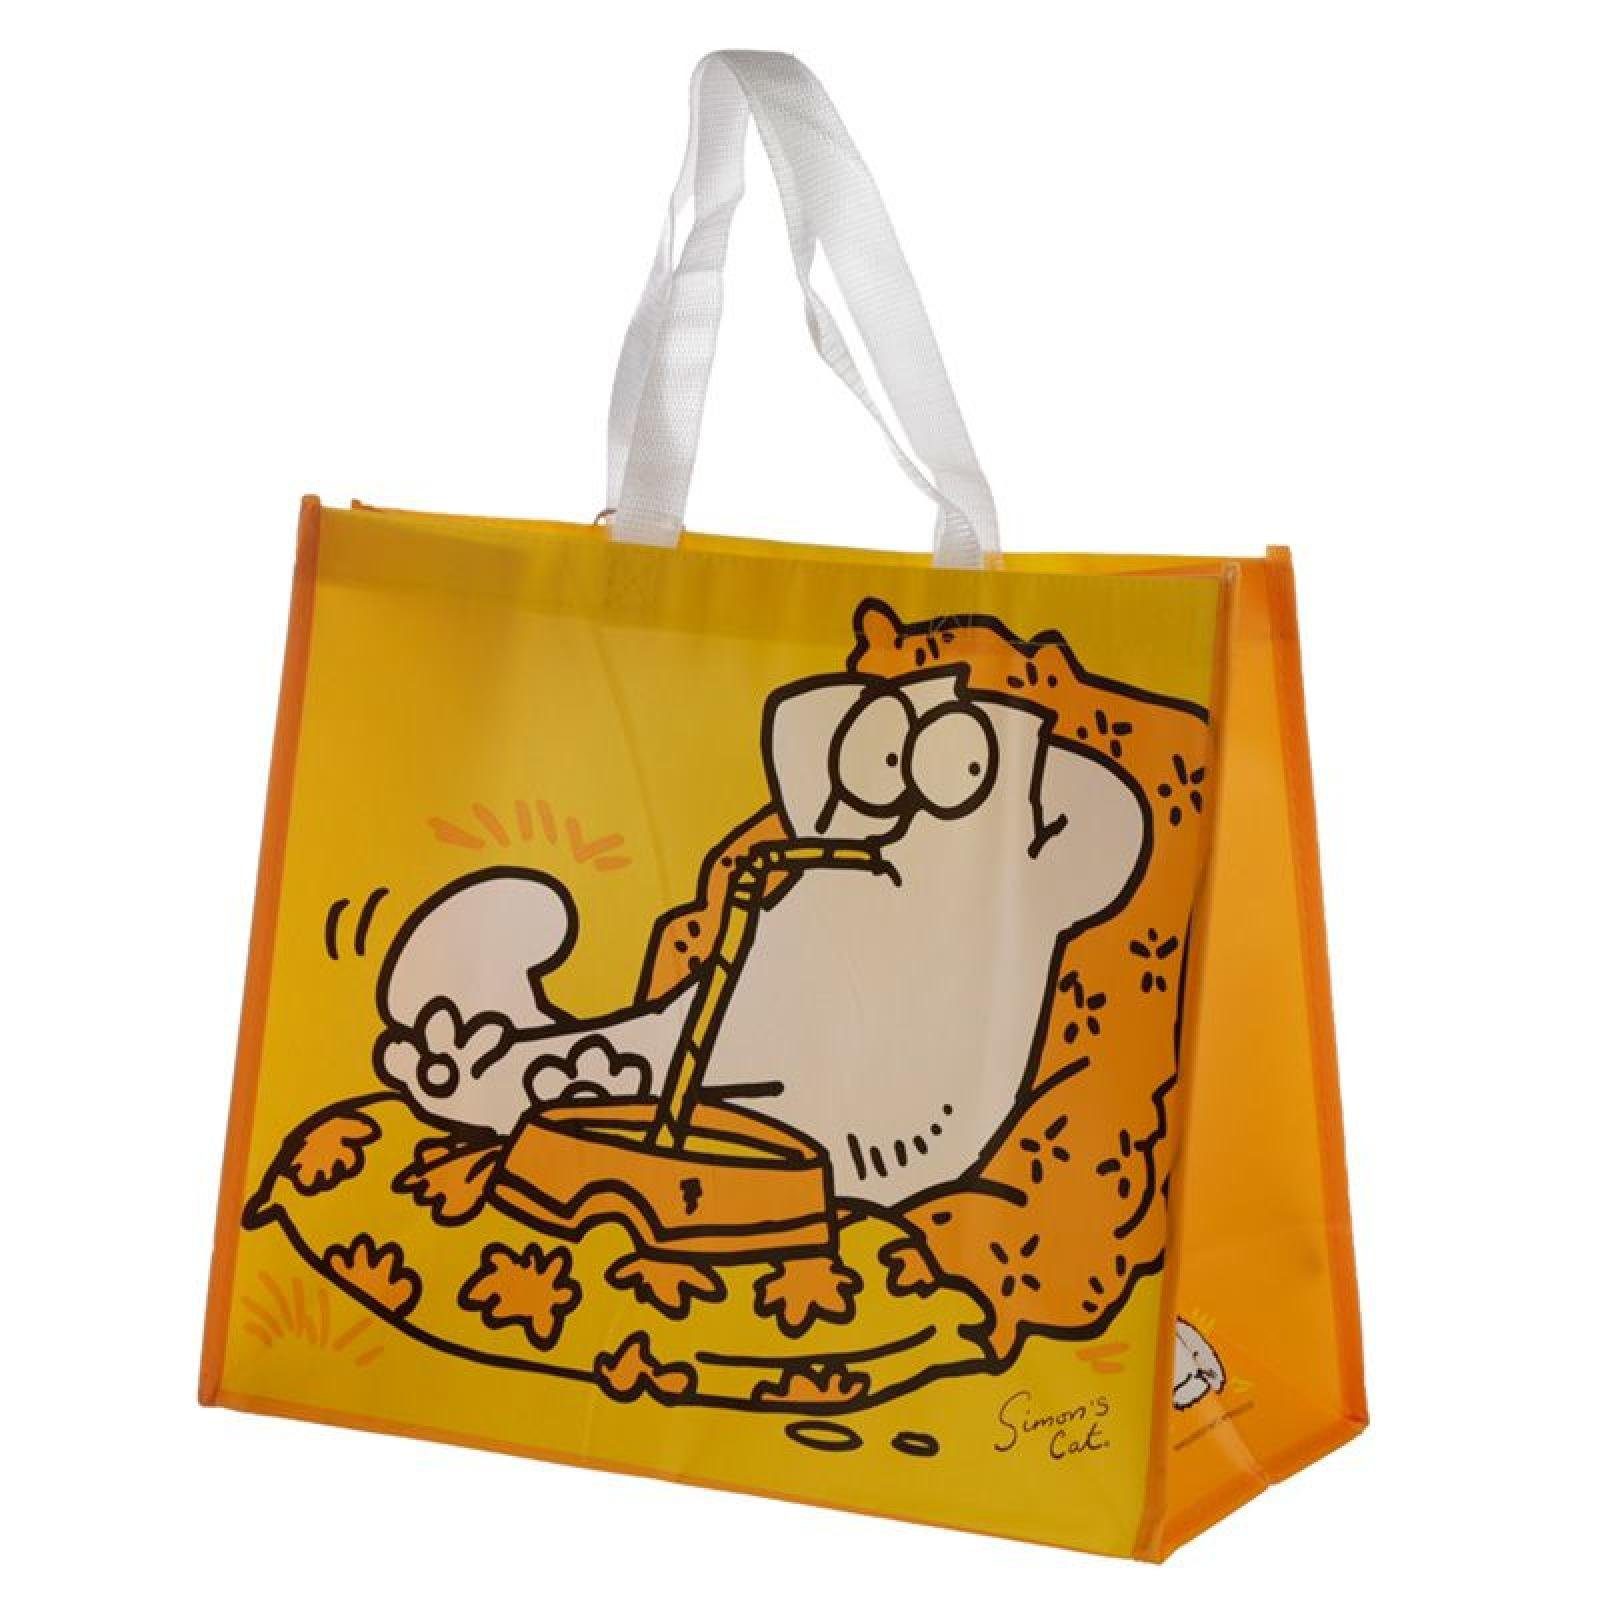 Puckator Einkaufsshopper Simon's Cat Katze gelbe Einkaufstasche